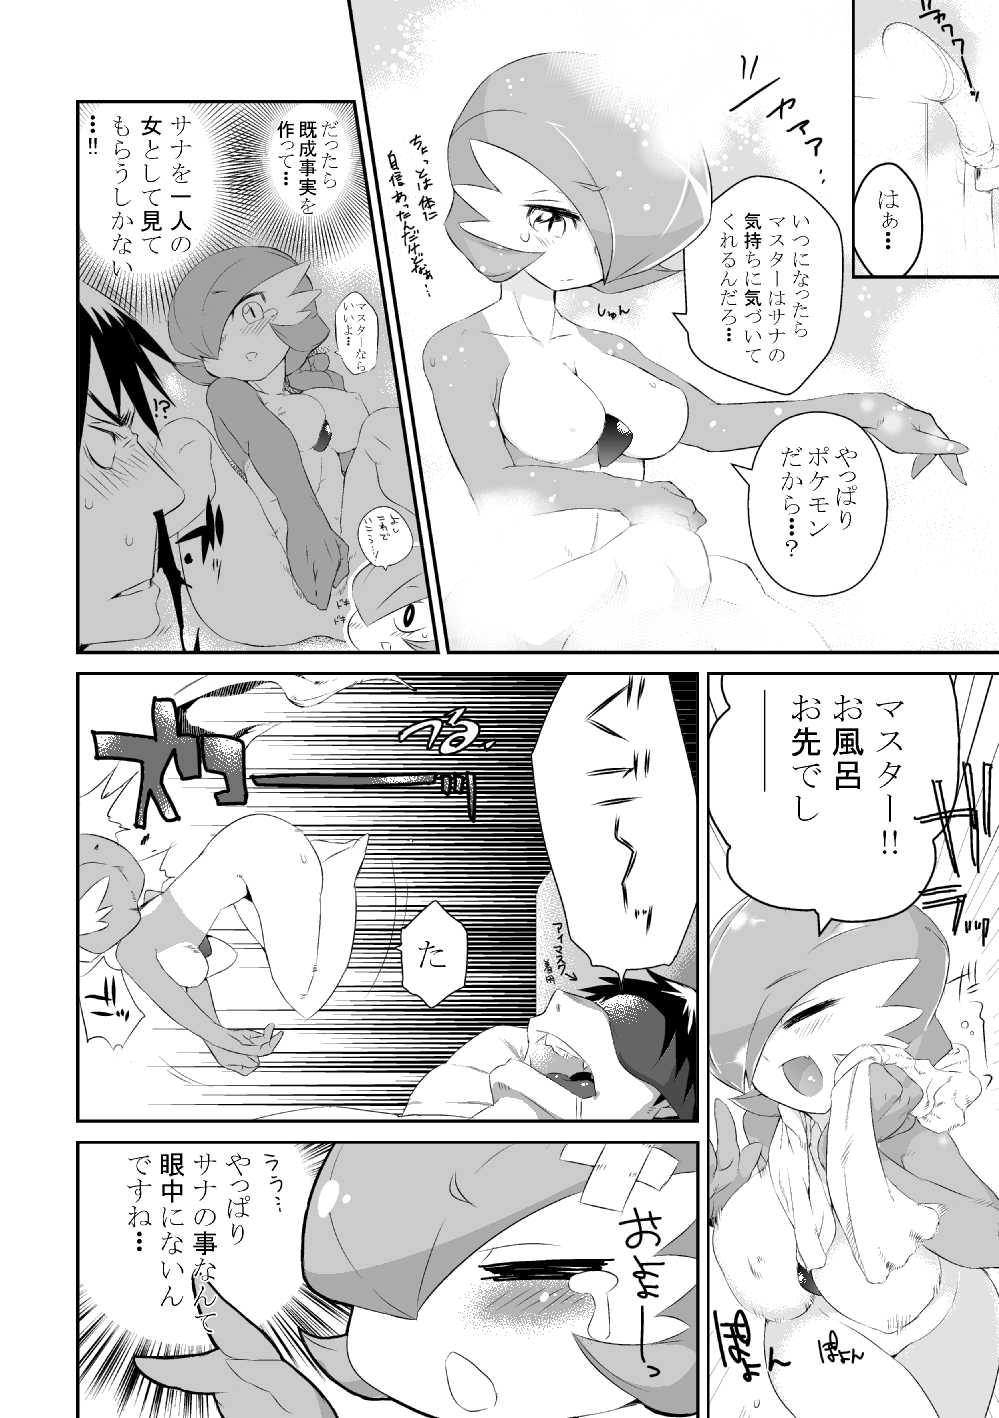 [Mizone] Trainer Temochi Pokemon ga Love Hotel ni Tomatta Baai (Pokemon) [みぞね] トレーナーと手持ちポケモンがラブホテルに泊まった場合 (ポケットモンスター)